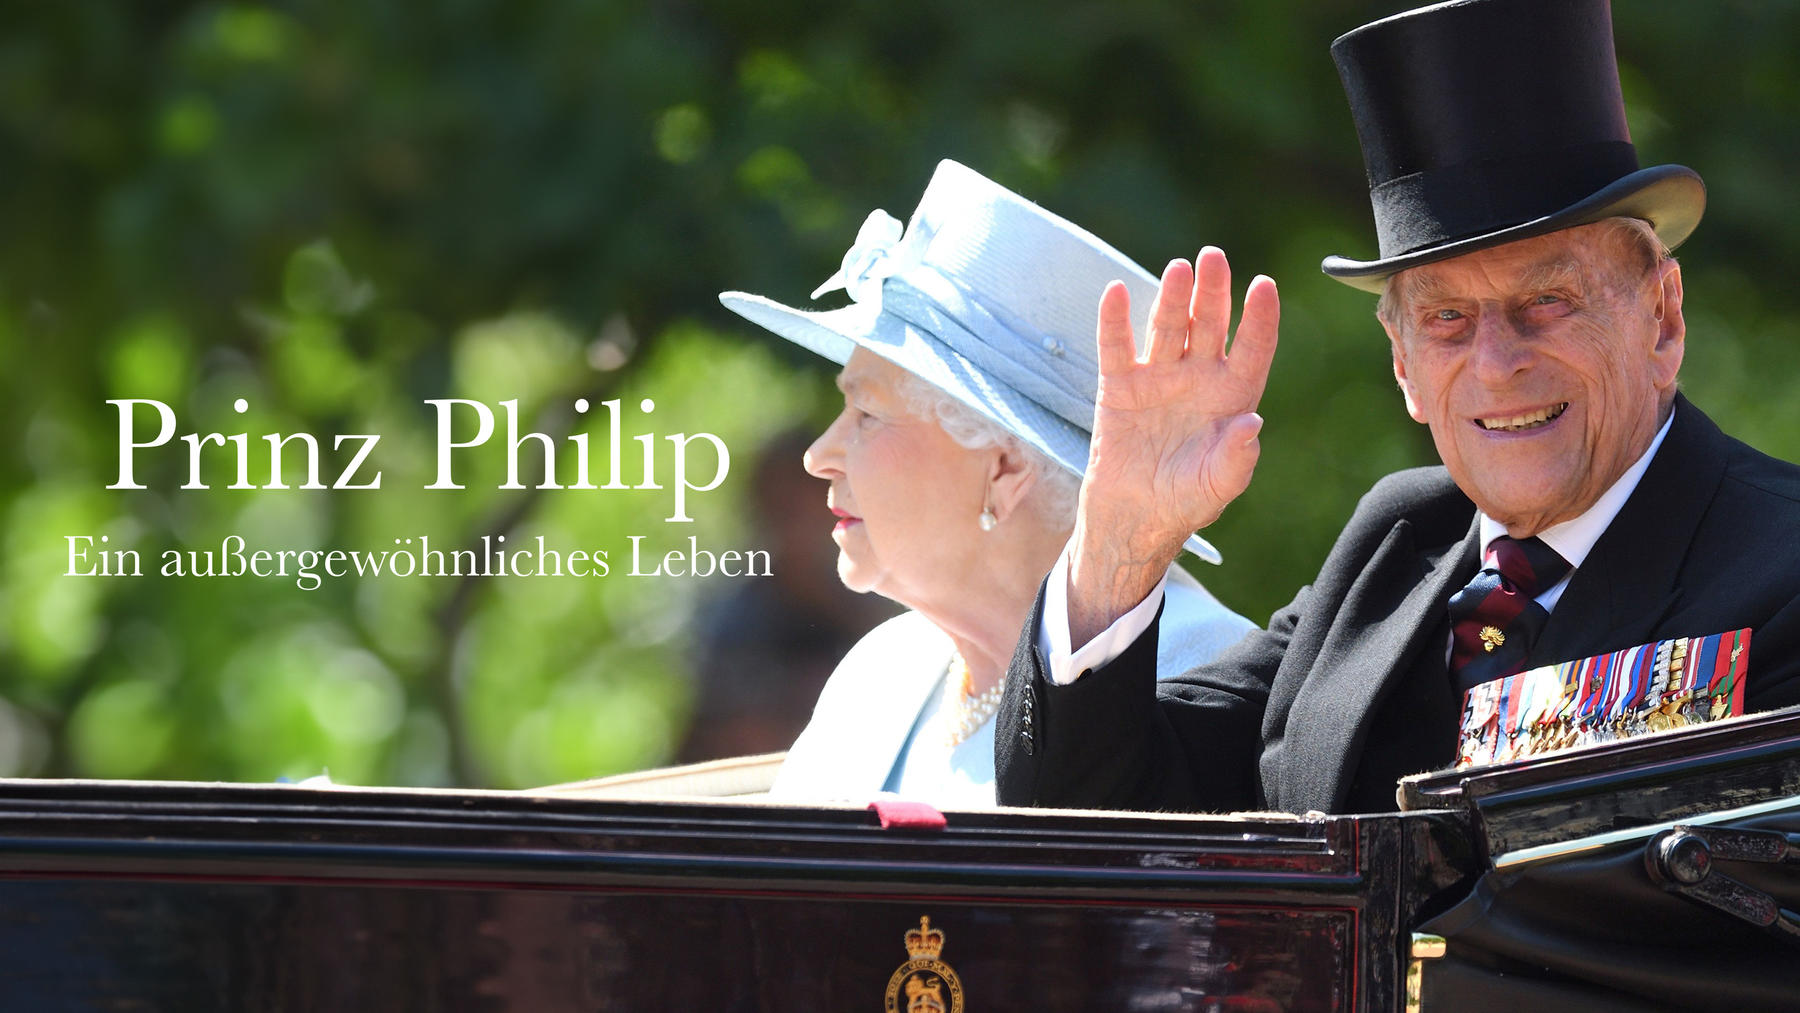 Prinz Philip: Ein außergewöhnliches Leben